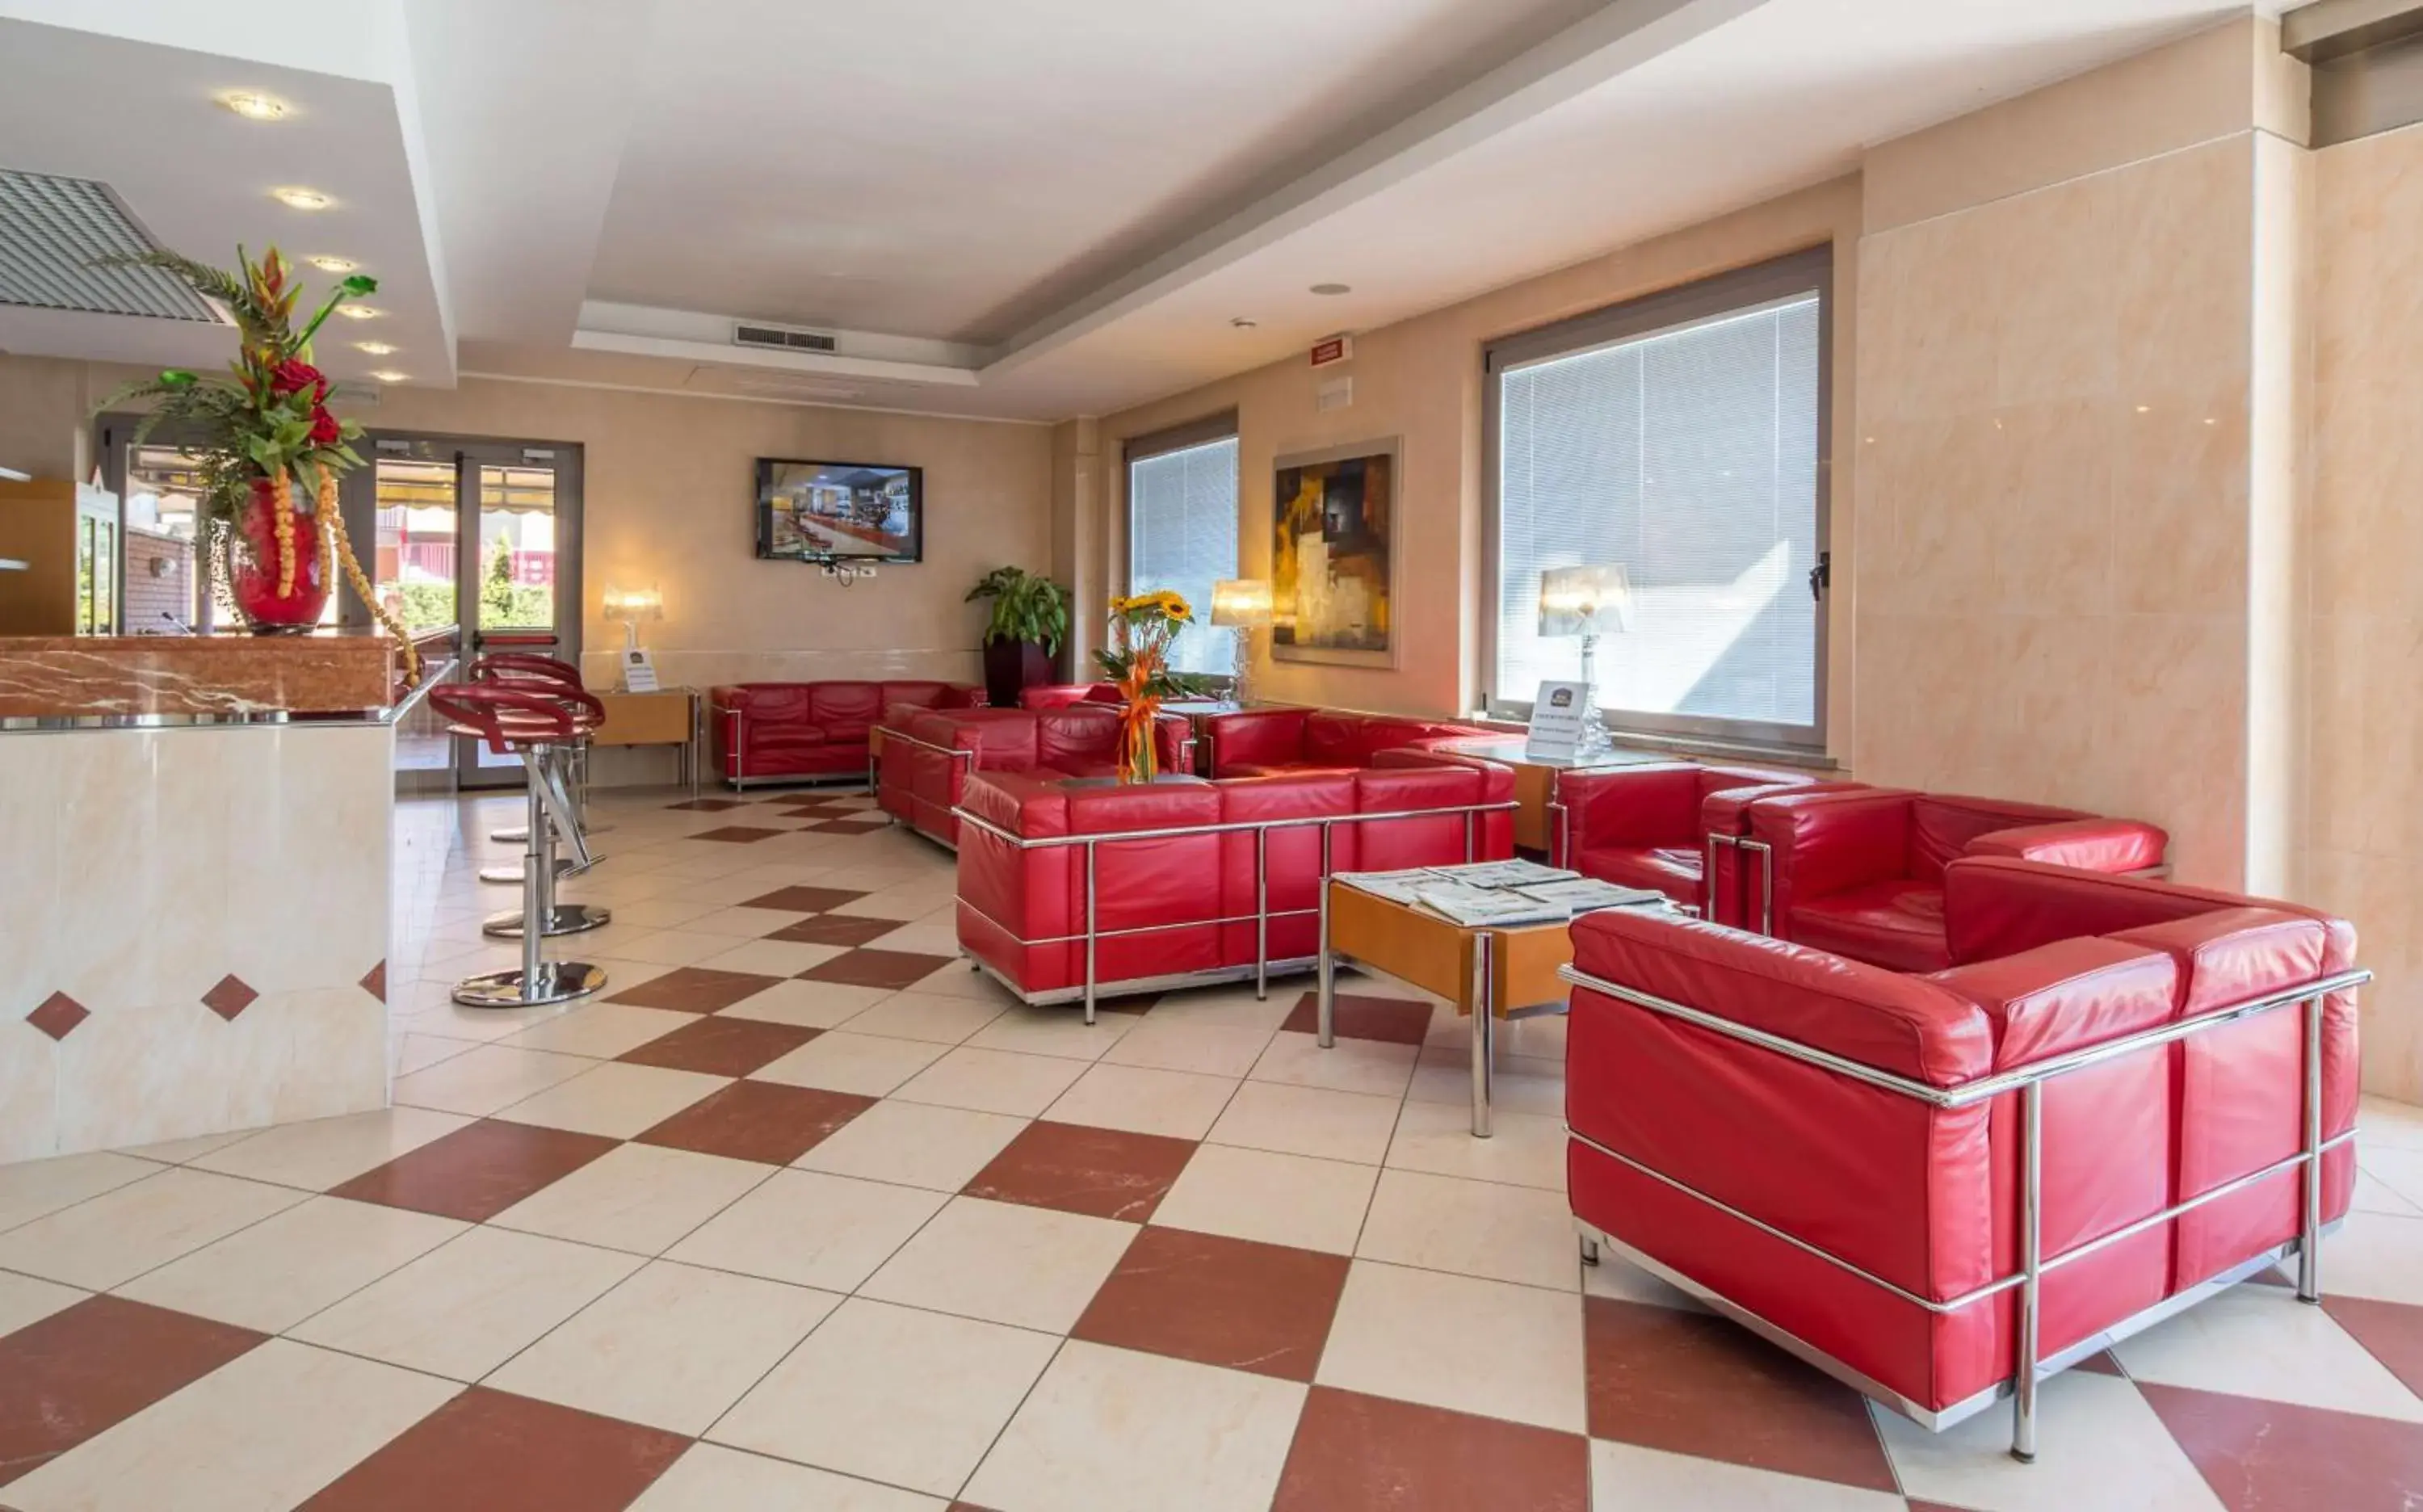 Lobby or reception in Best Western Hotel I Triangoli